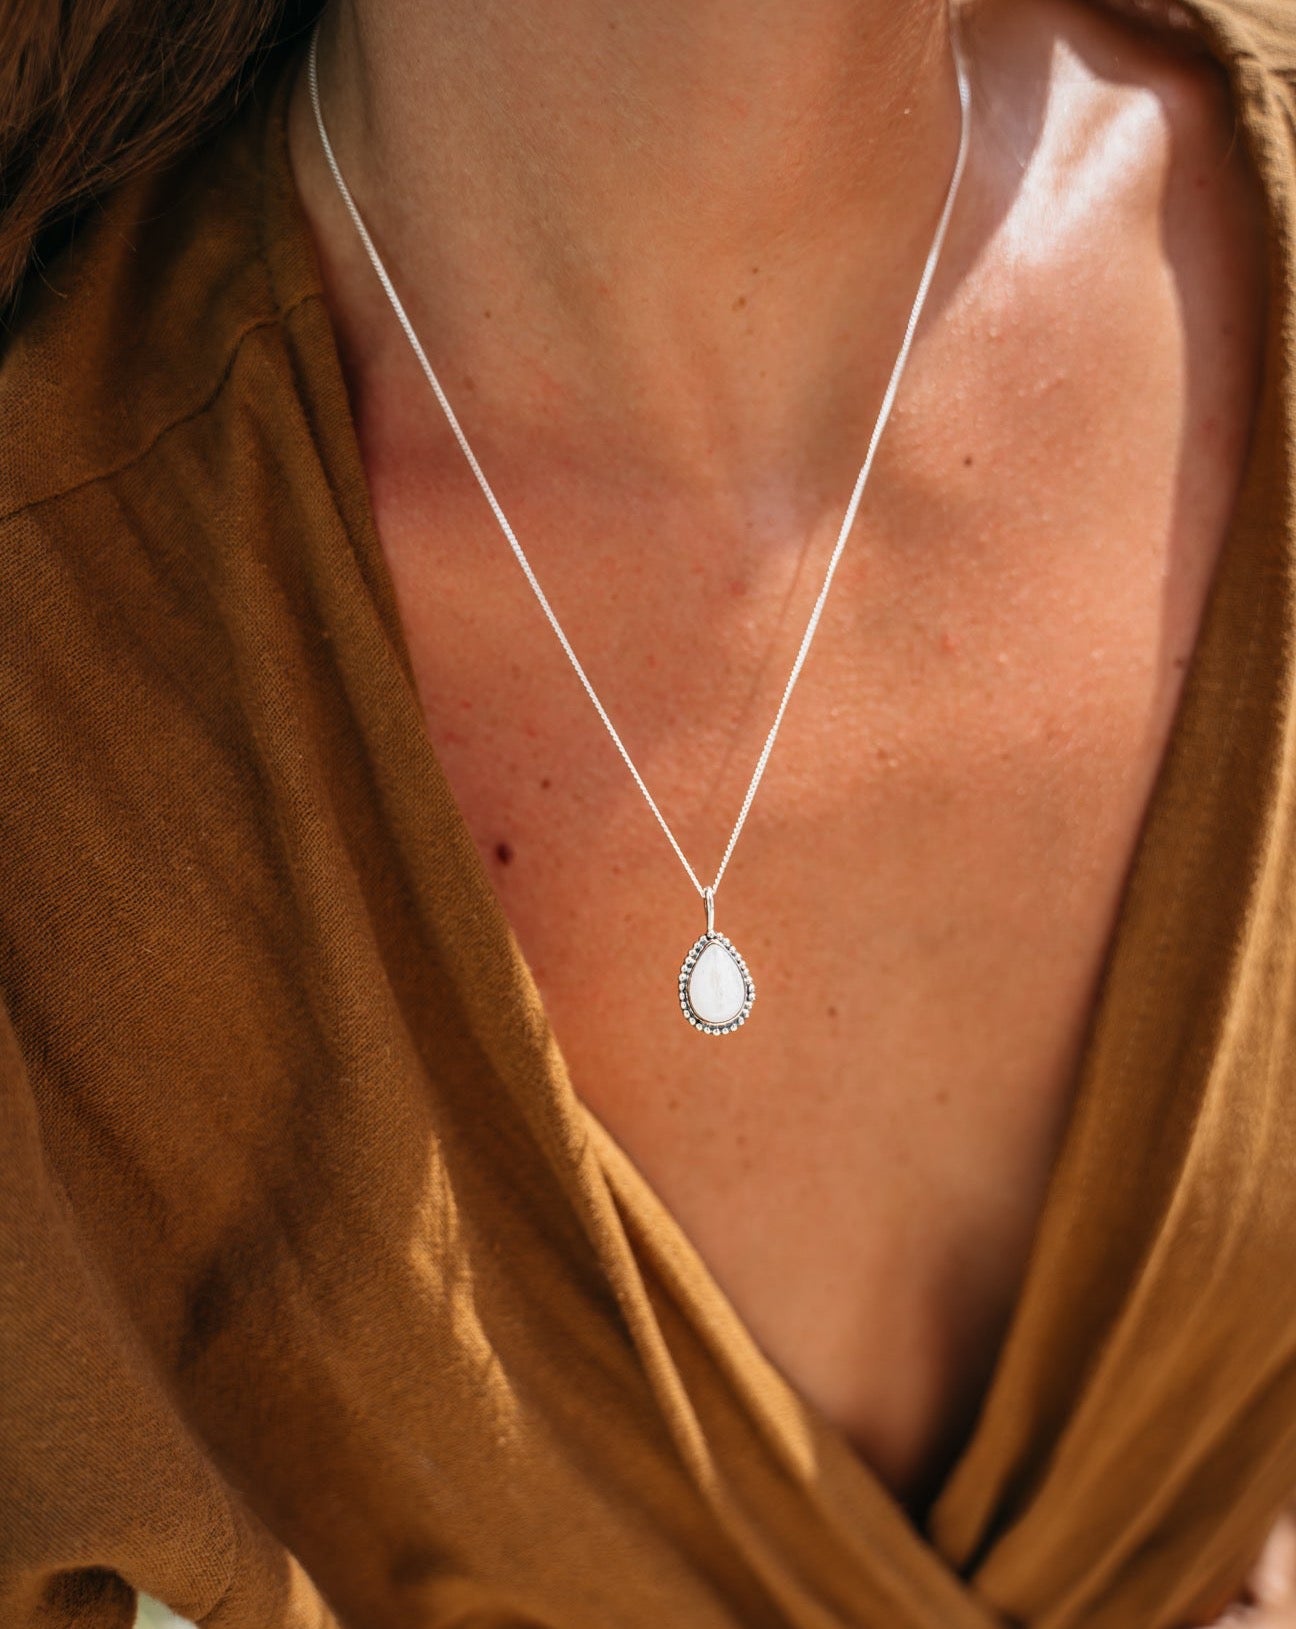 Mondstein Kette | Silber Kette | Schmuck aus Bali | VERLAN Jewellery | das perfekte Geschenk für Freundin finden | wasserfester Schmuck